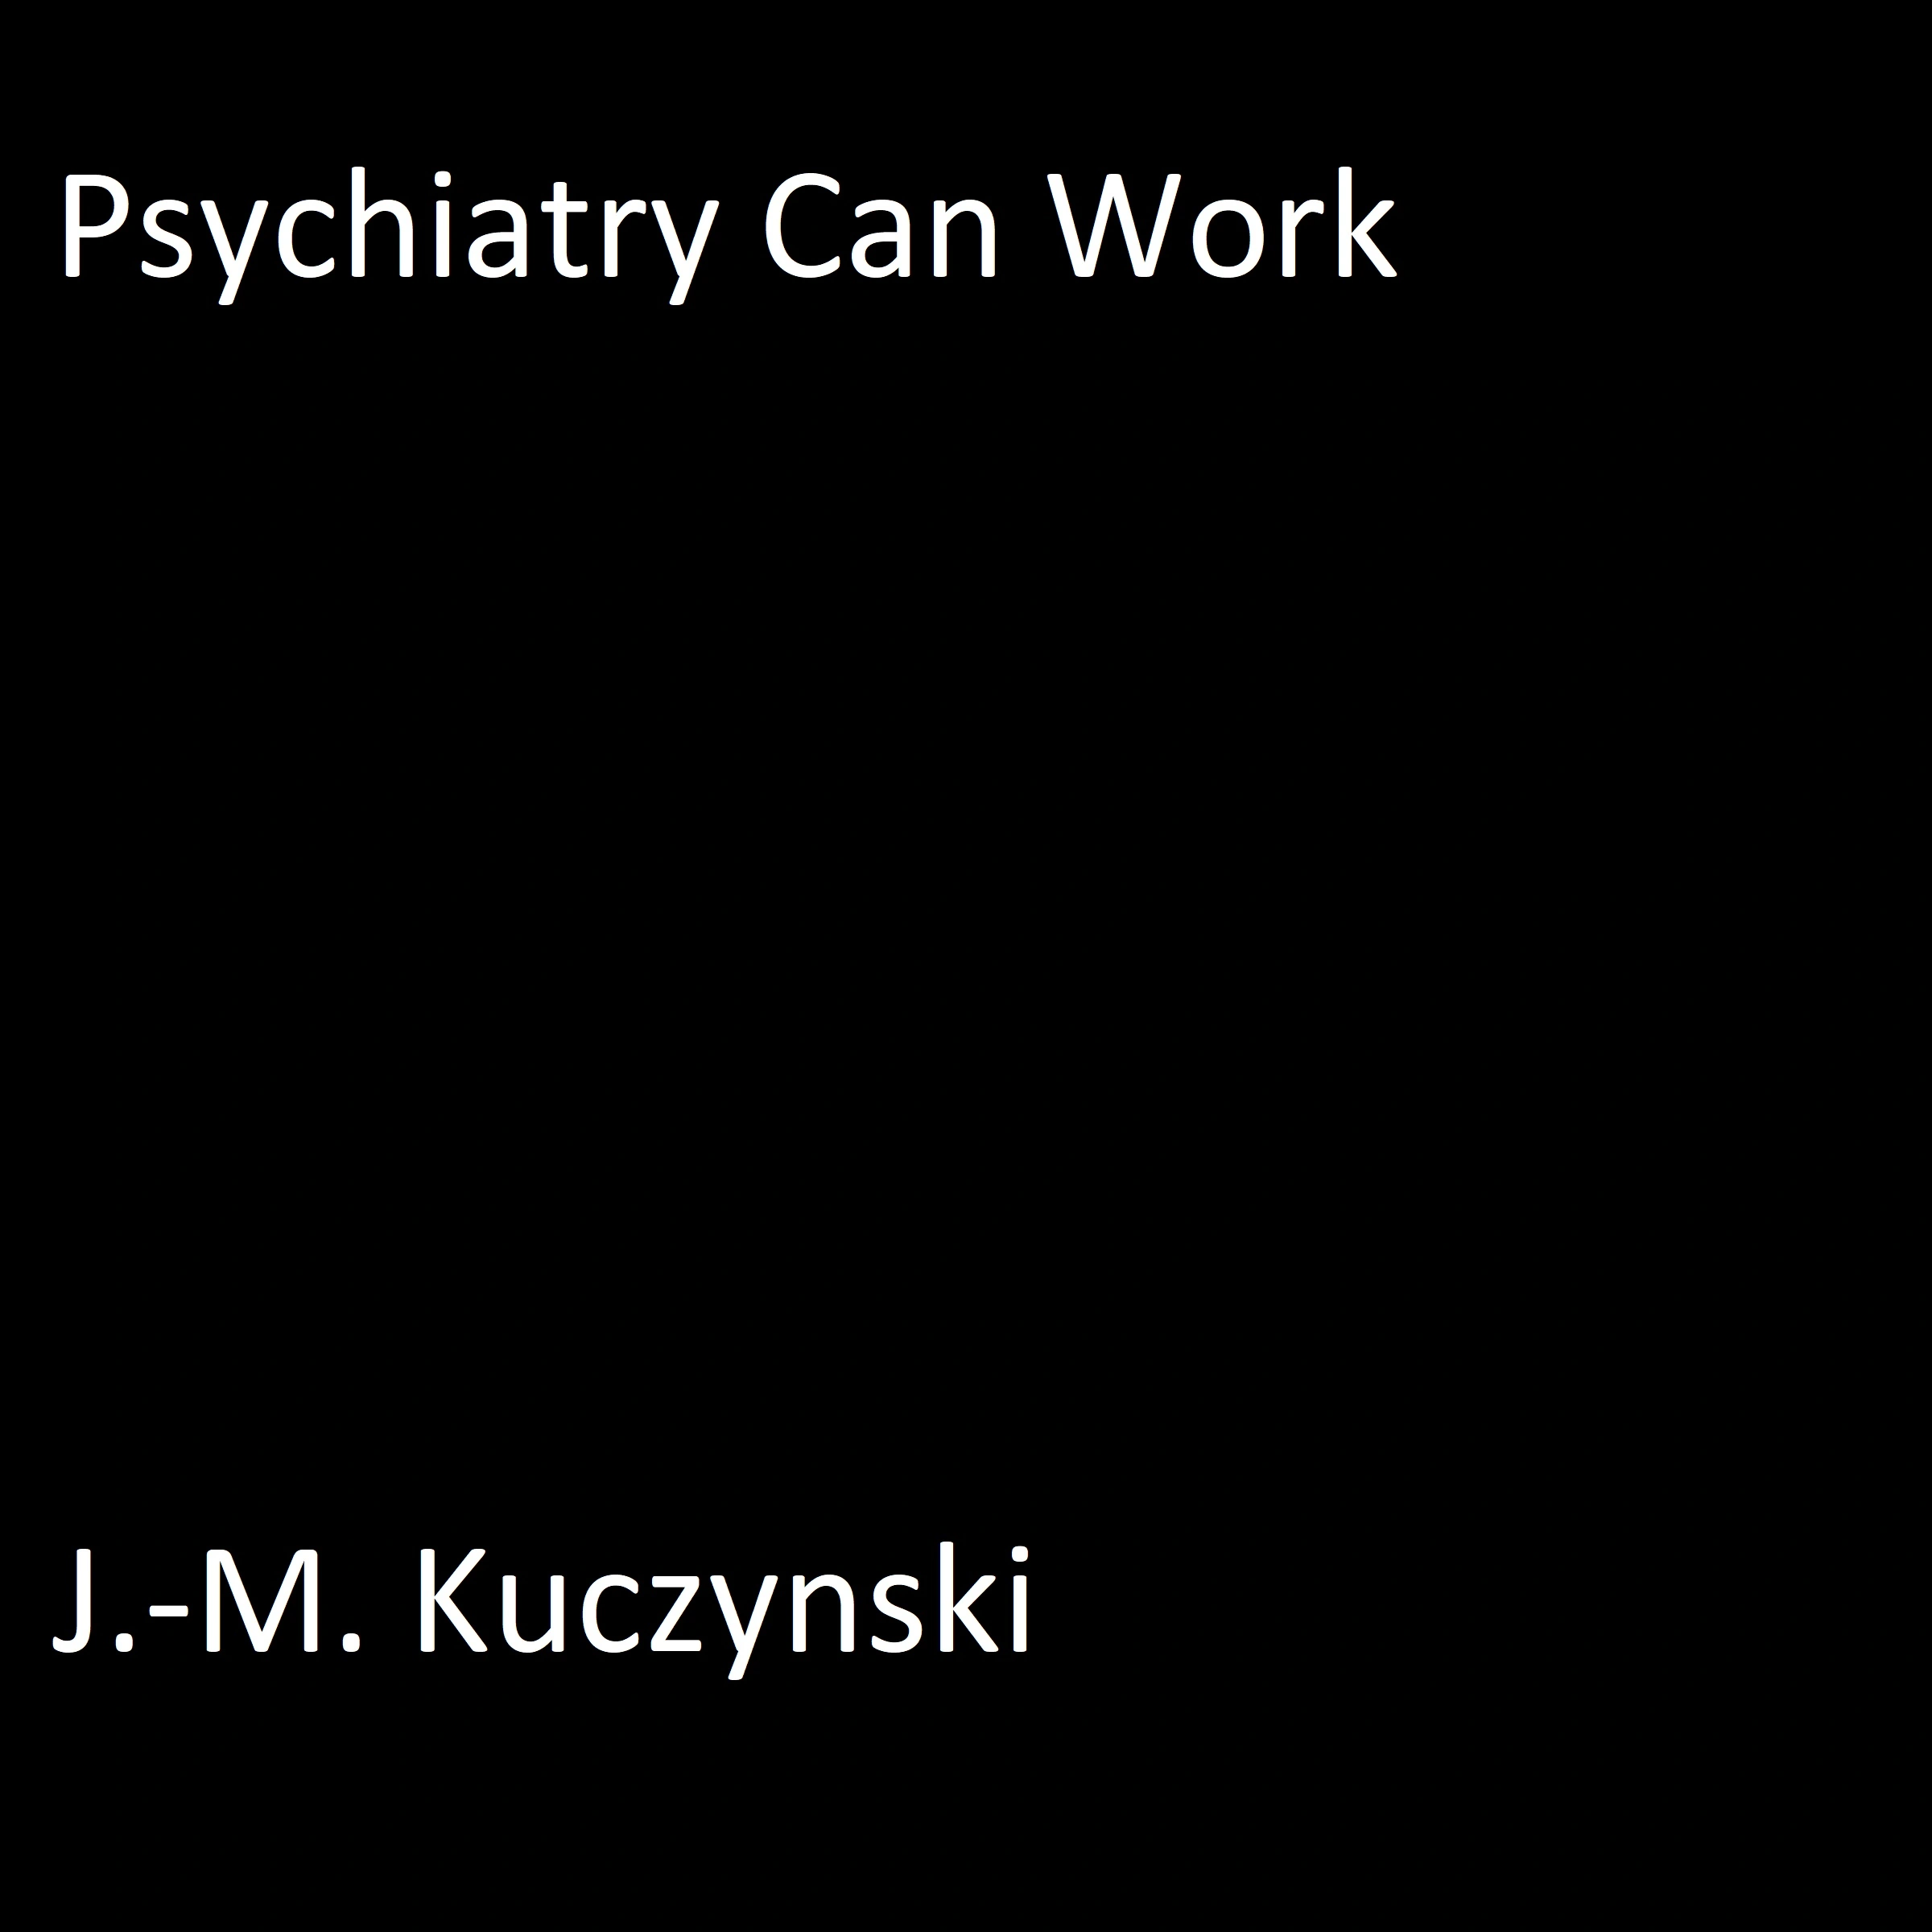 Psychiatry Can Work Audiobook by J.-M. Kuczynski